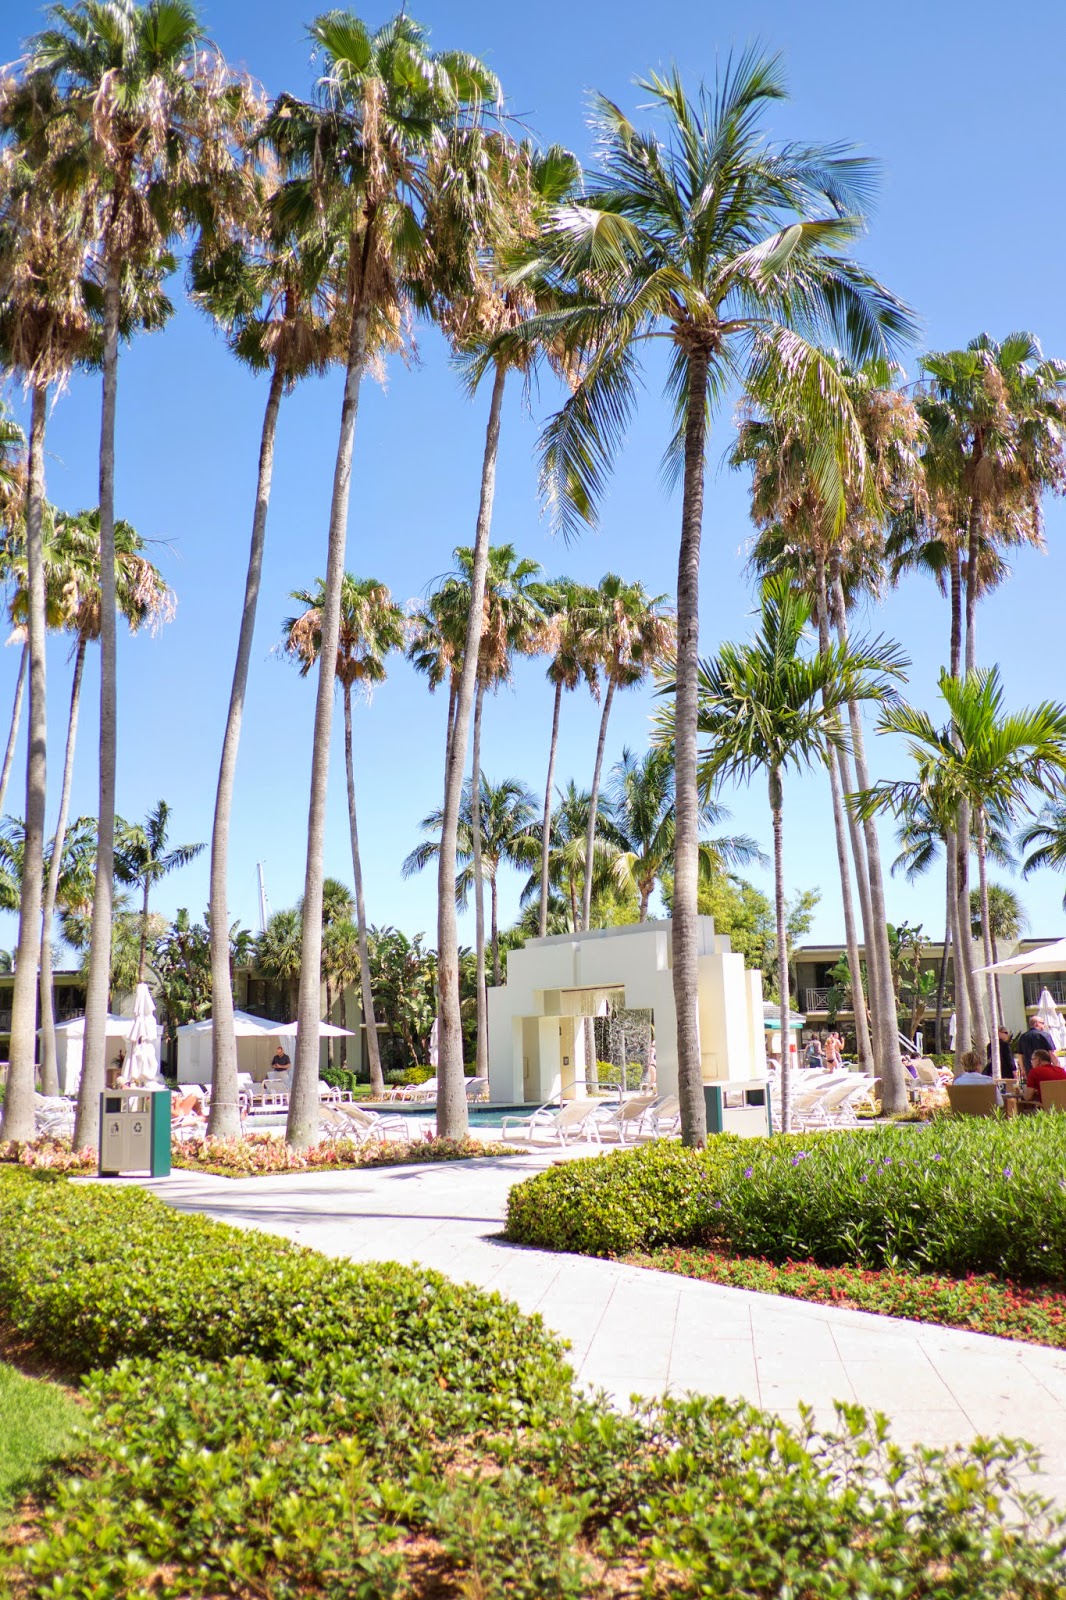 The Hyatt, Fort Lauderdale, Florida